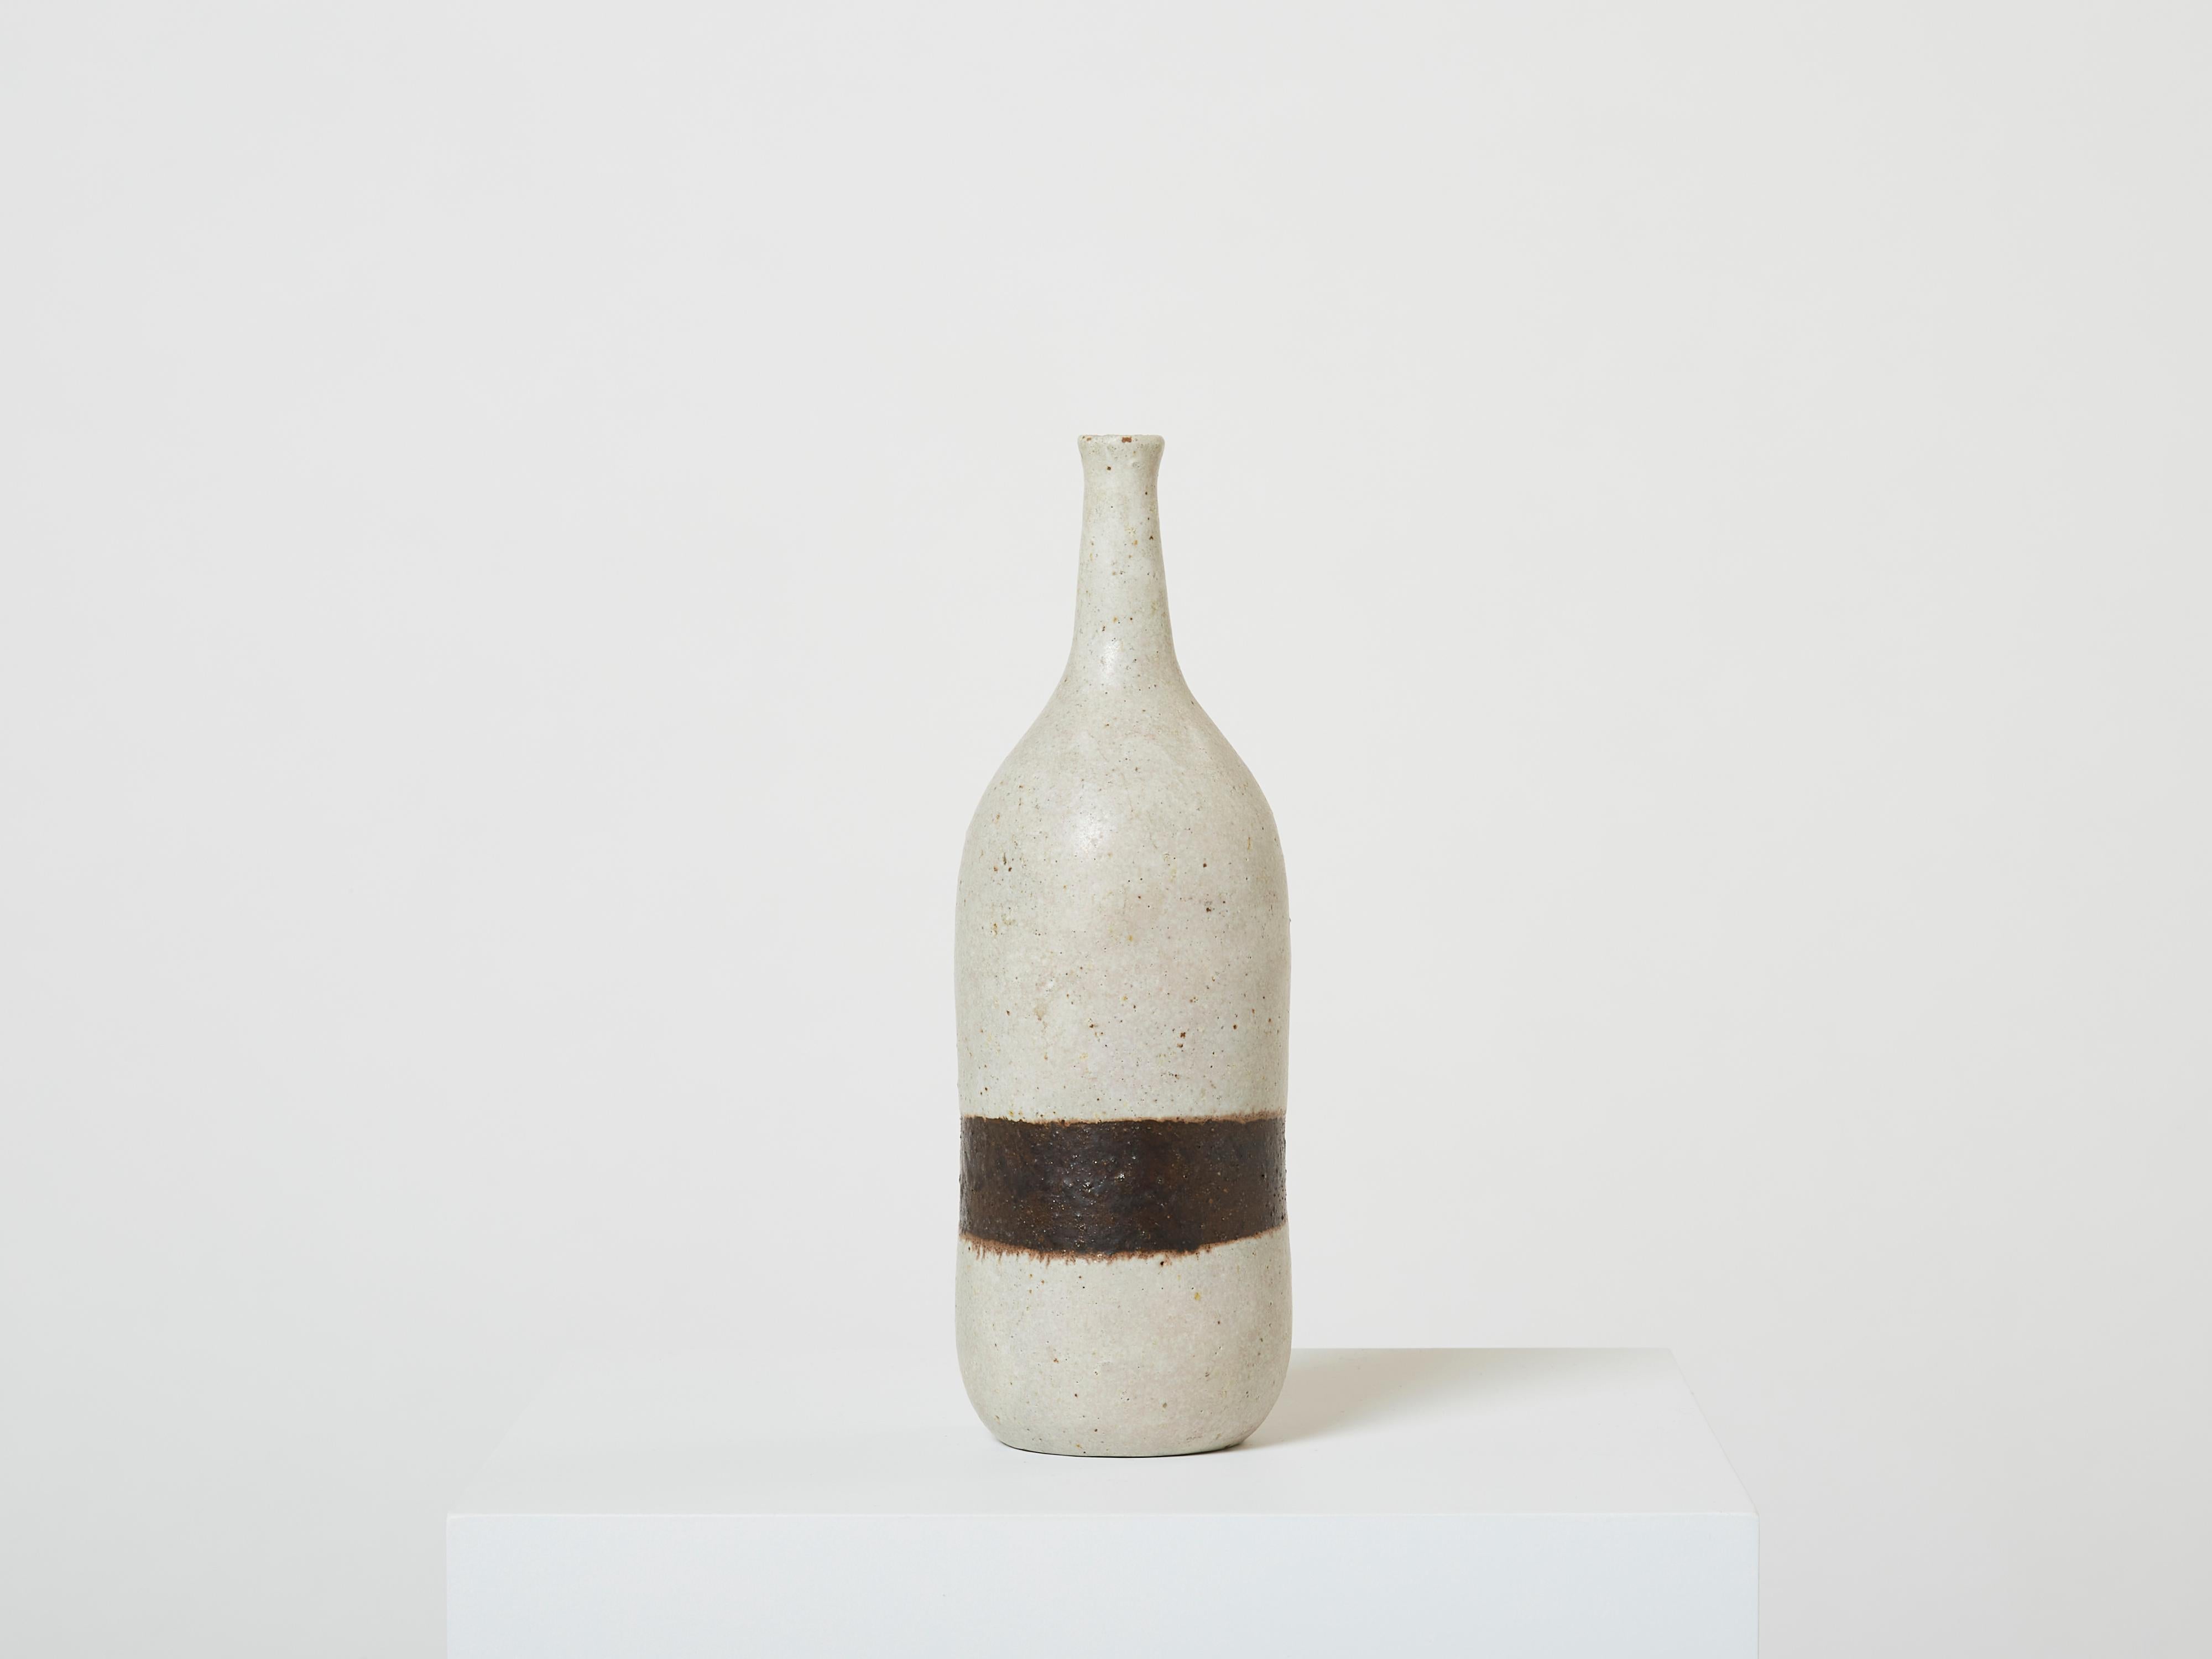 Magnifique vase à fleur unique en grès émaillé gris de Bruno Gambone, en forme de bouteille, réalisé au milieu des années 1970. Ce magnifique vase est typique du design minimaliste de Bruno Gambone, avec une seule ligne brune. Bruno est retourné à